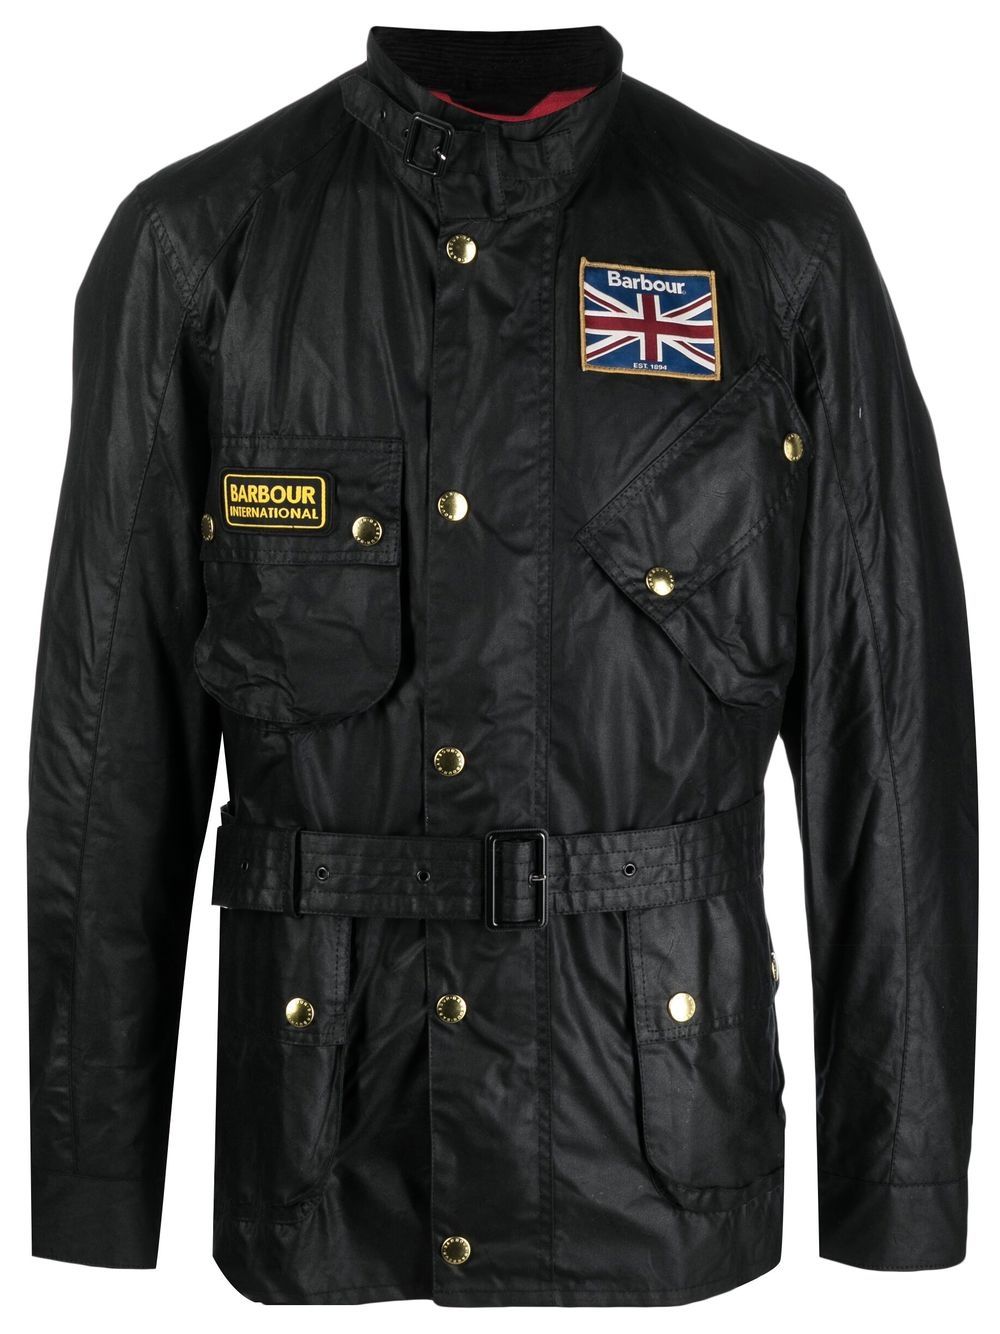 BARBOUR INTERNATIONAL Jackets Black